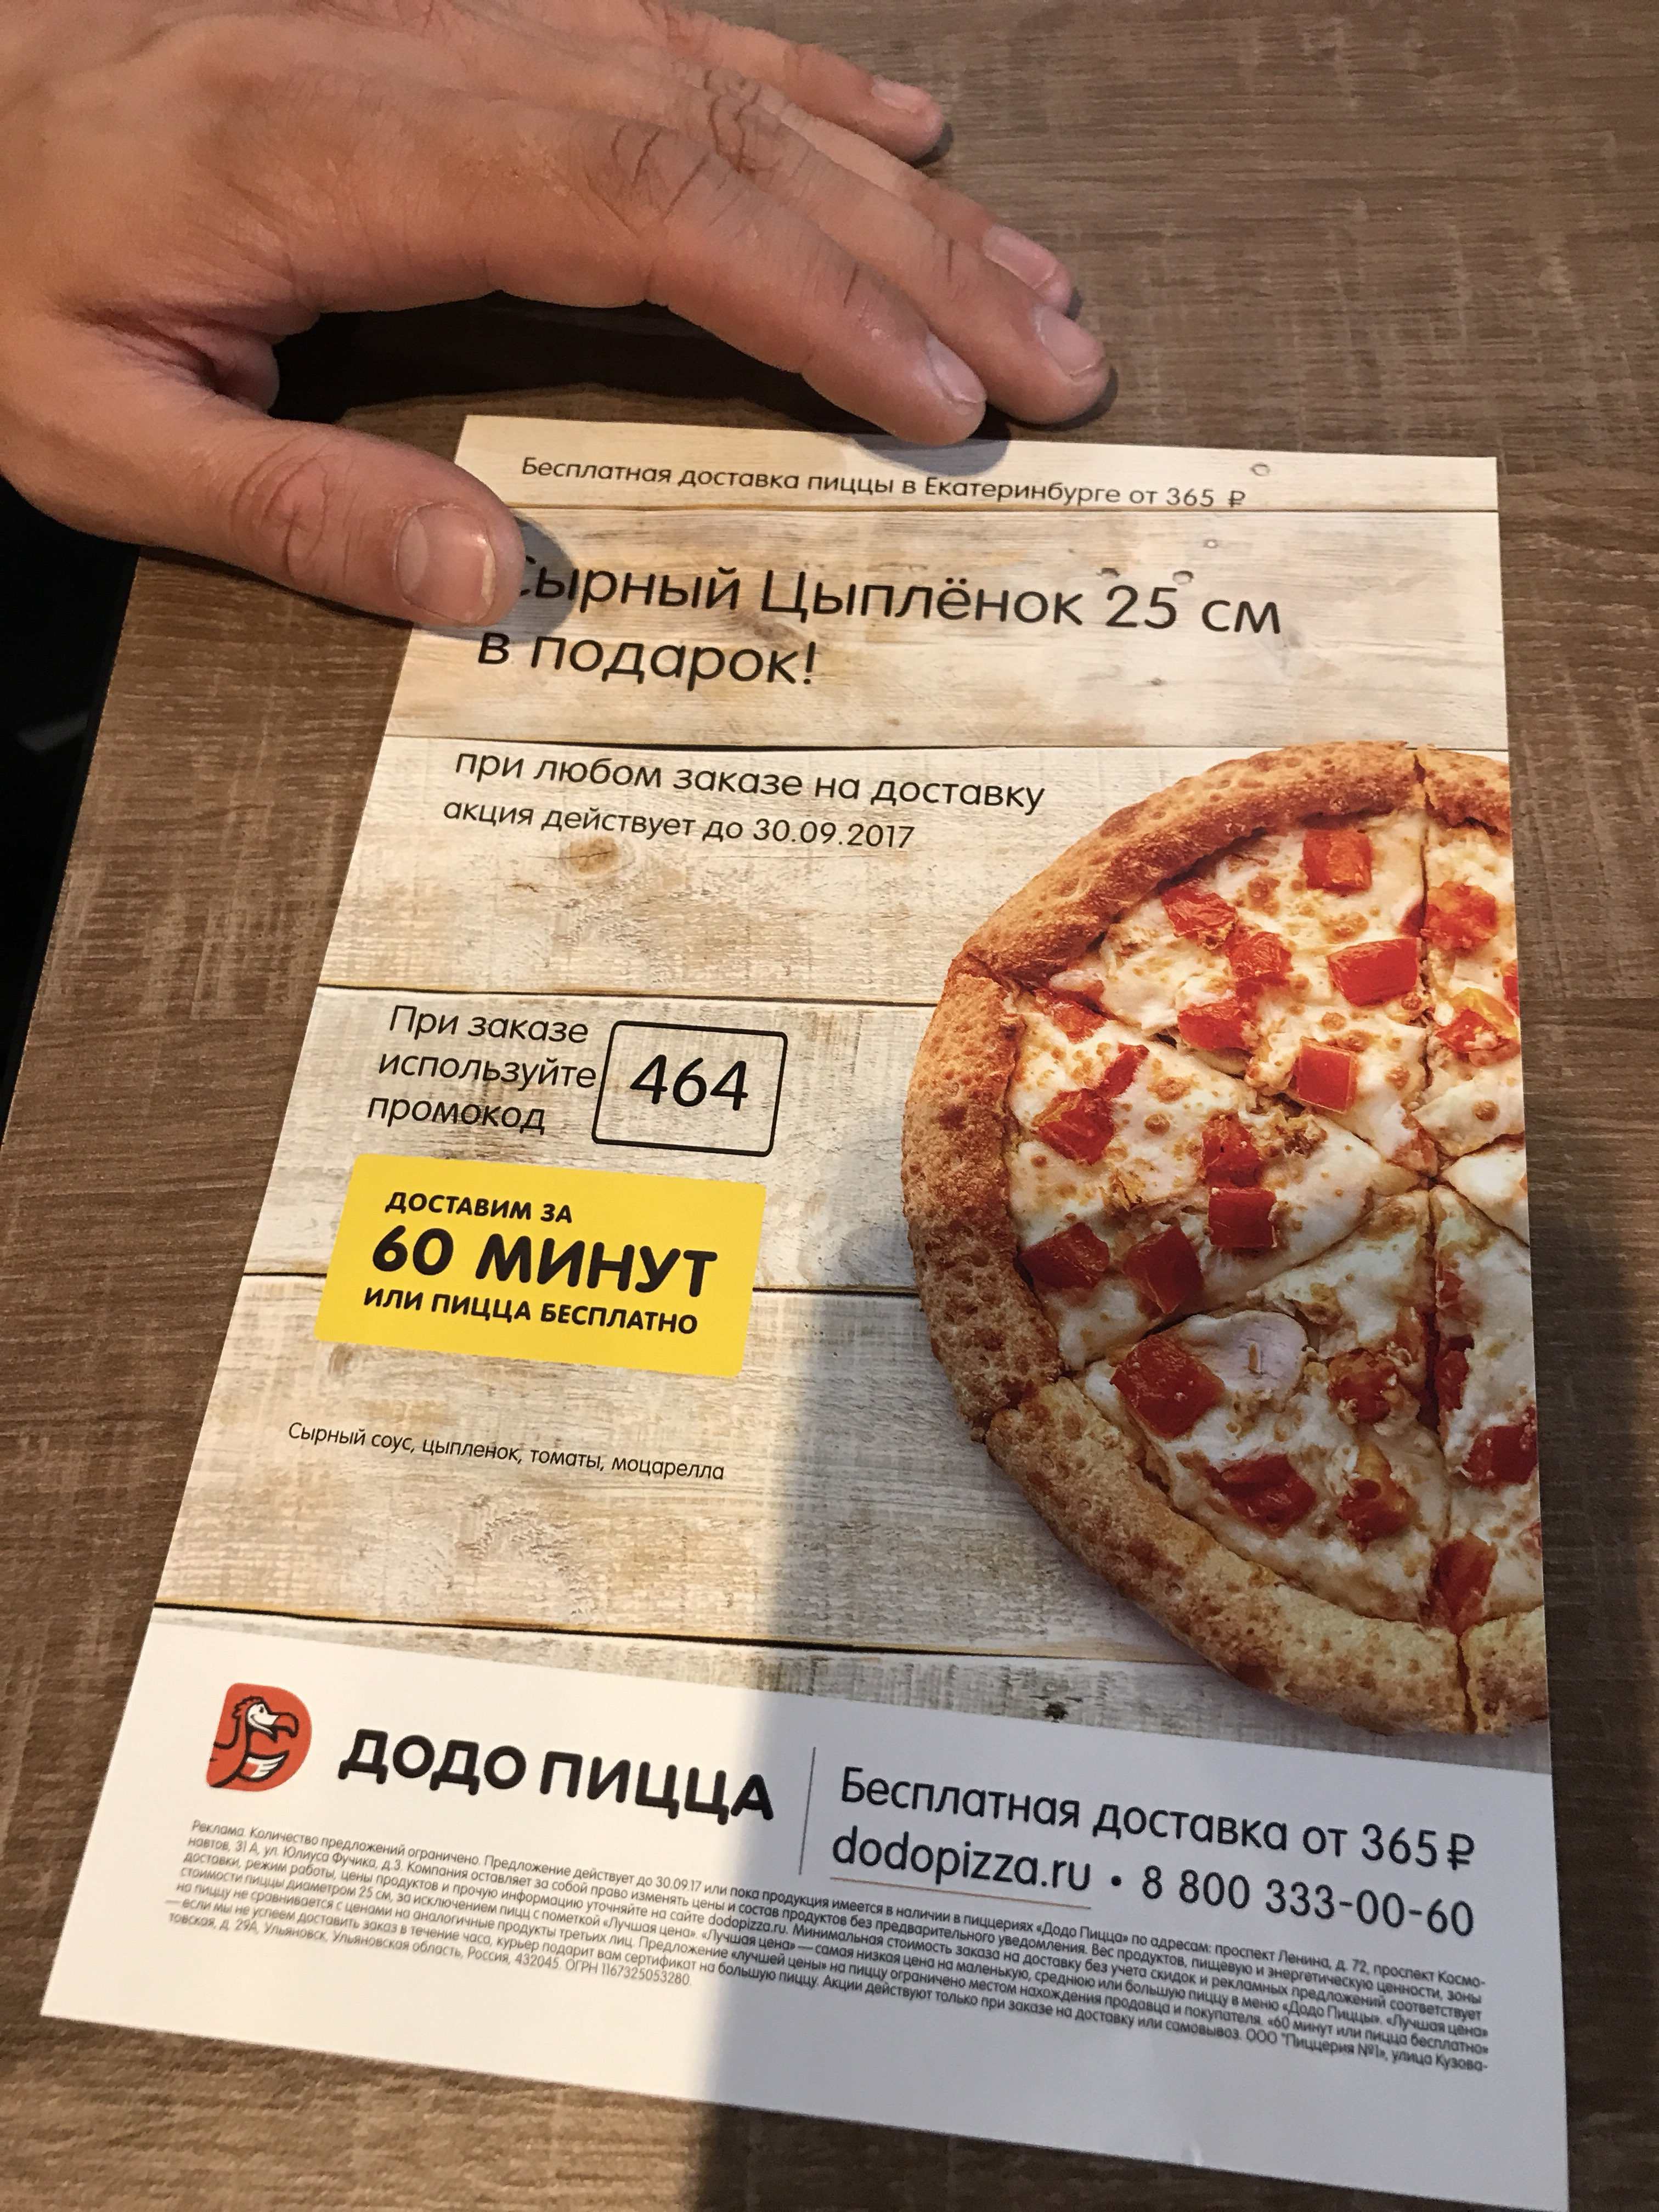 цена пиццы в додо пицца пепперони фото 116